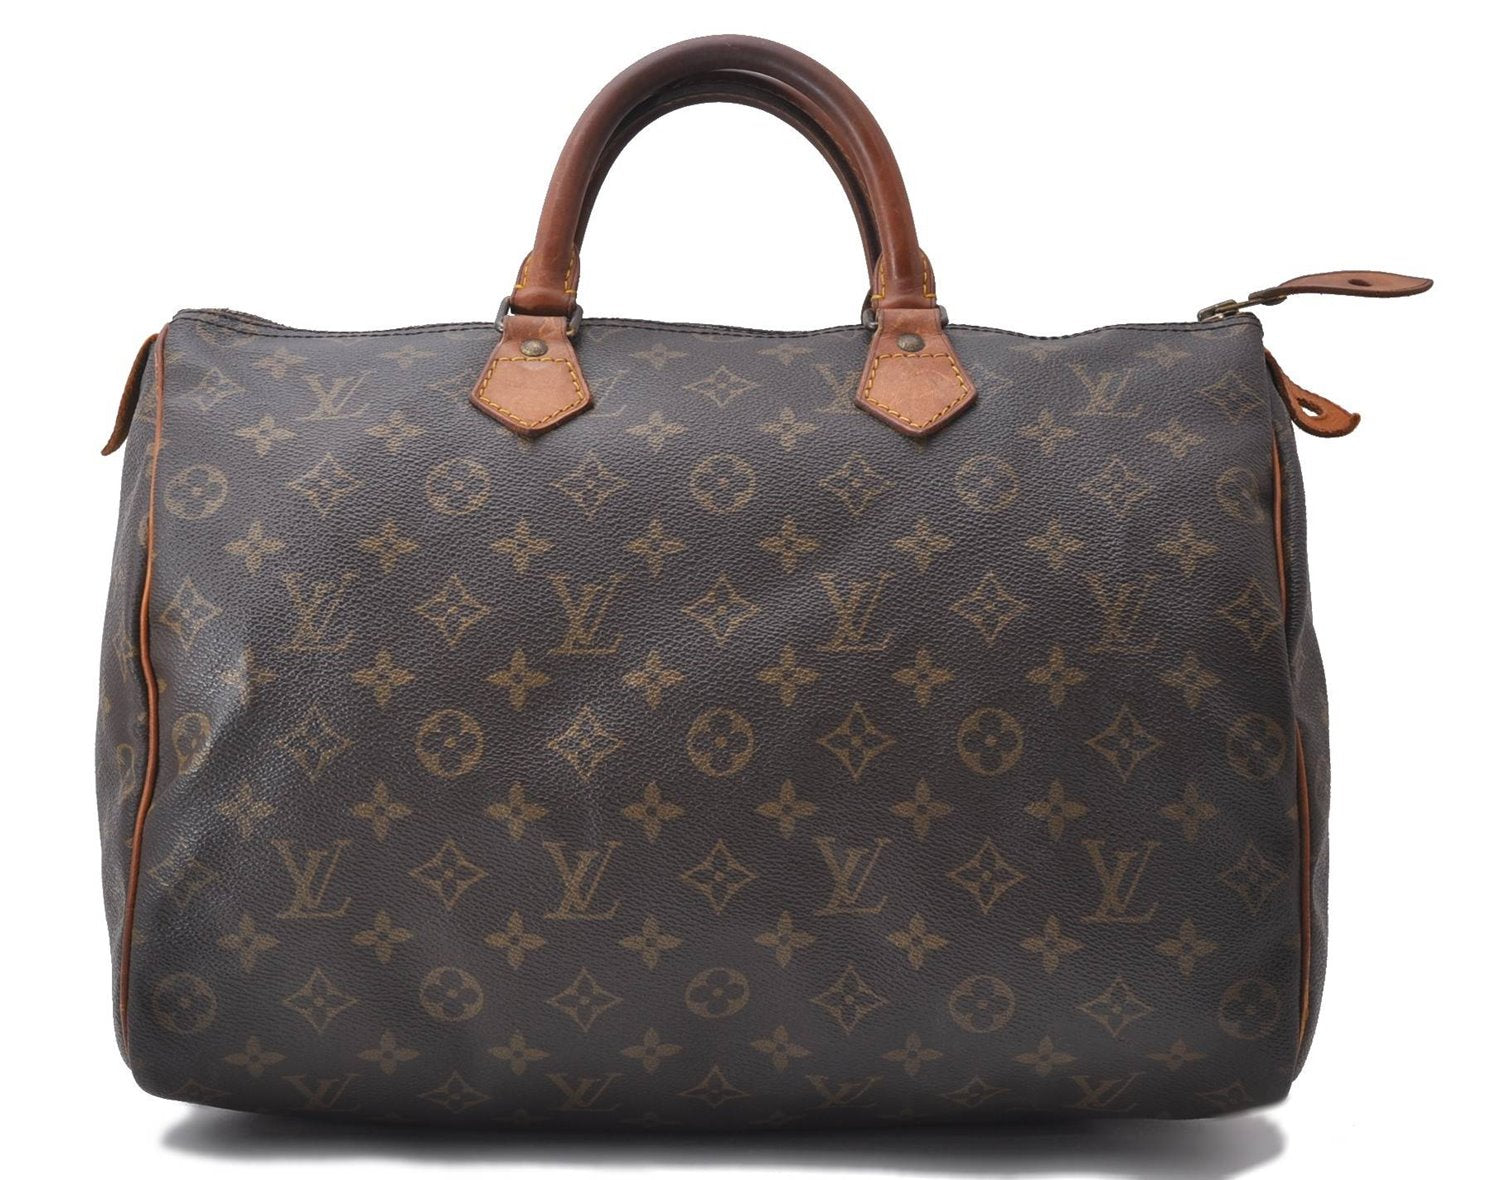 Authentic Louis Vuitton Monogram Speedy 35 Hand Bag M41524 LV 9887C